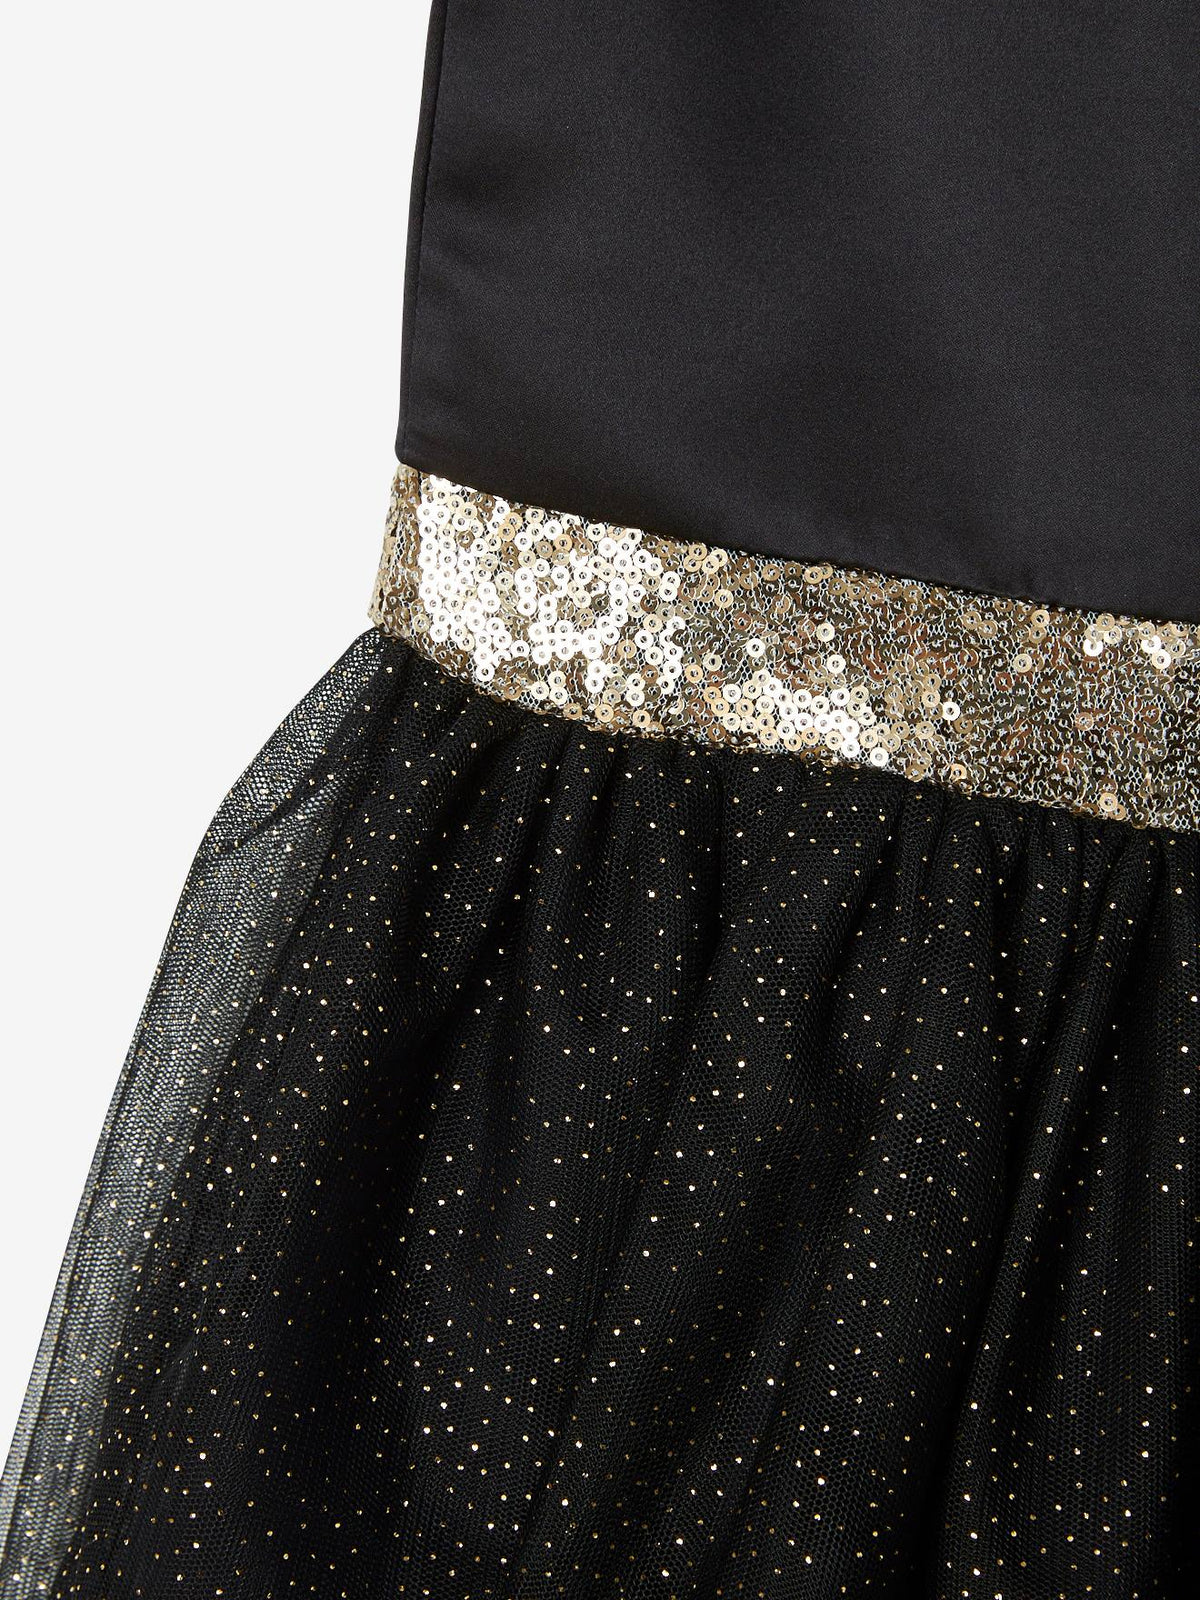 Girls Elegant Glitter Tulle Gown G20132E